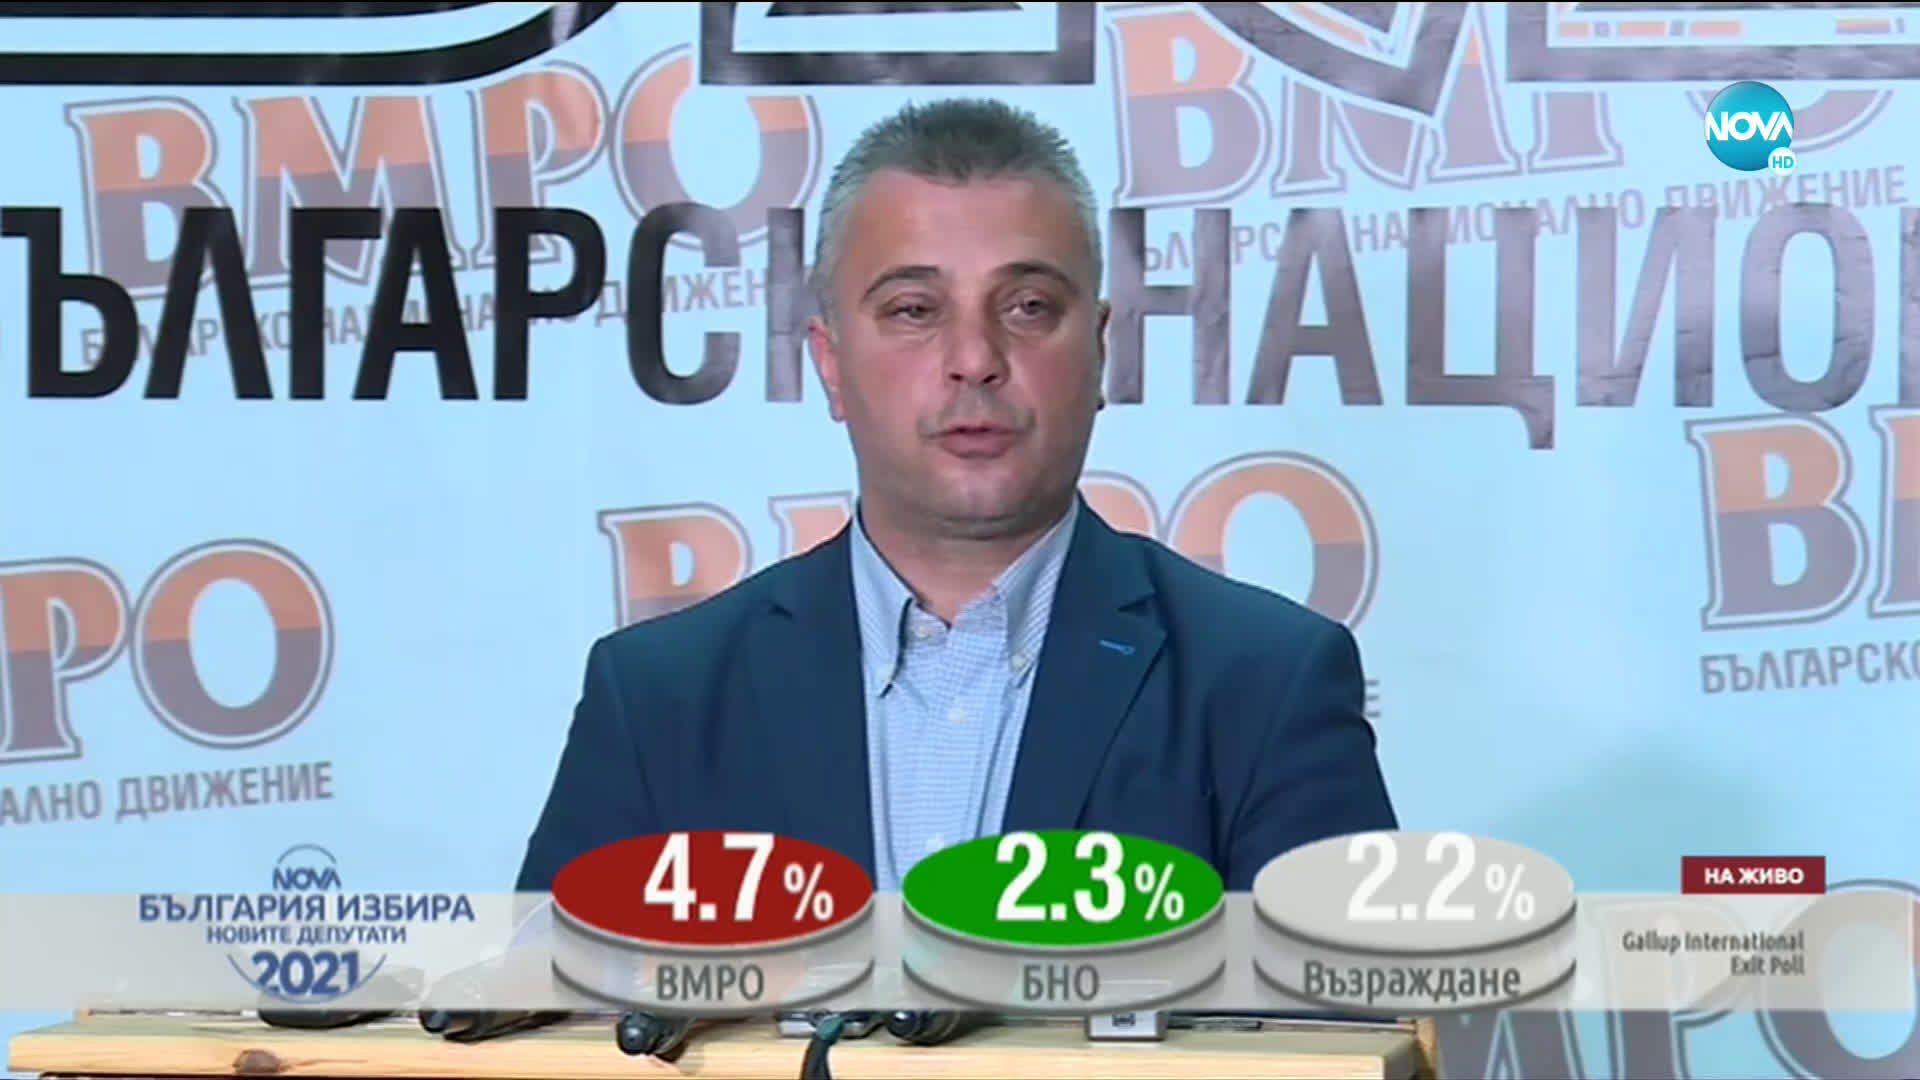 Юлиан Ангелов: ВМРО направи една добра кампания